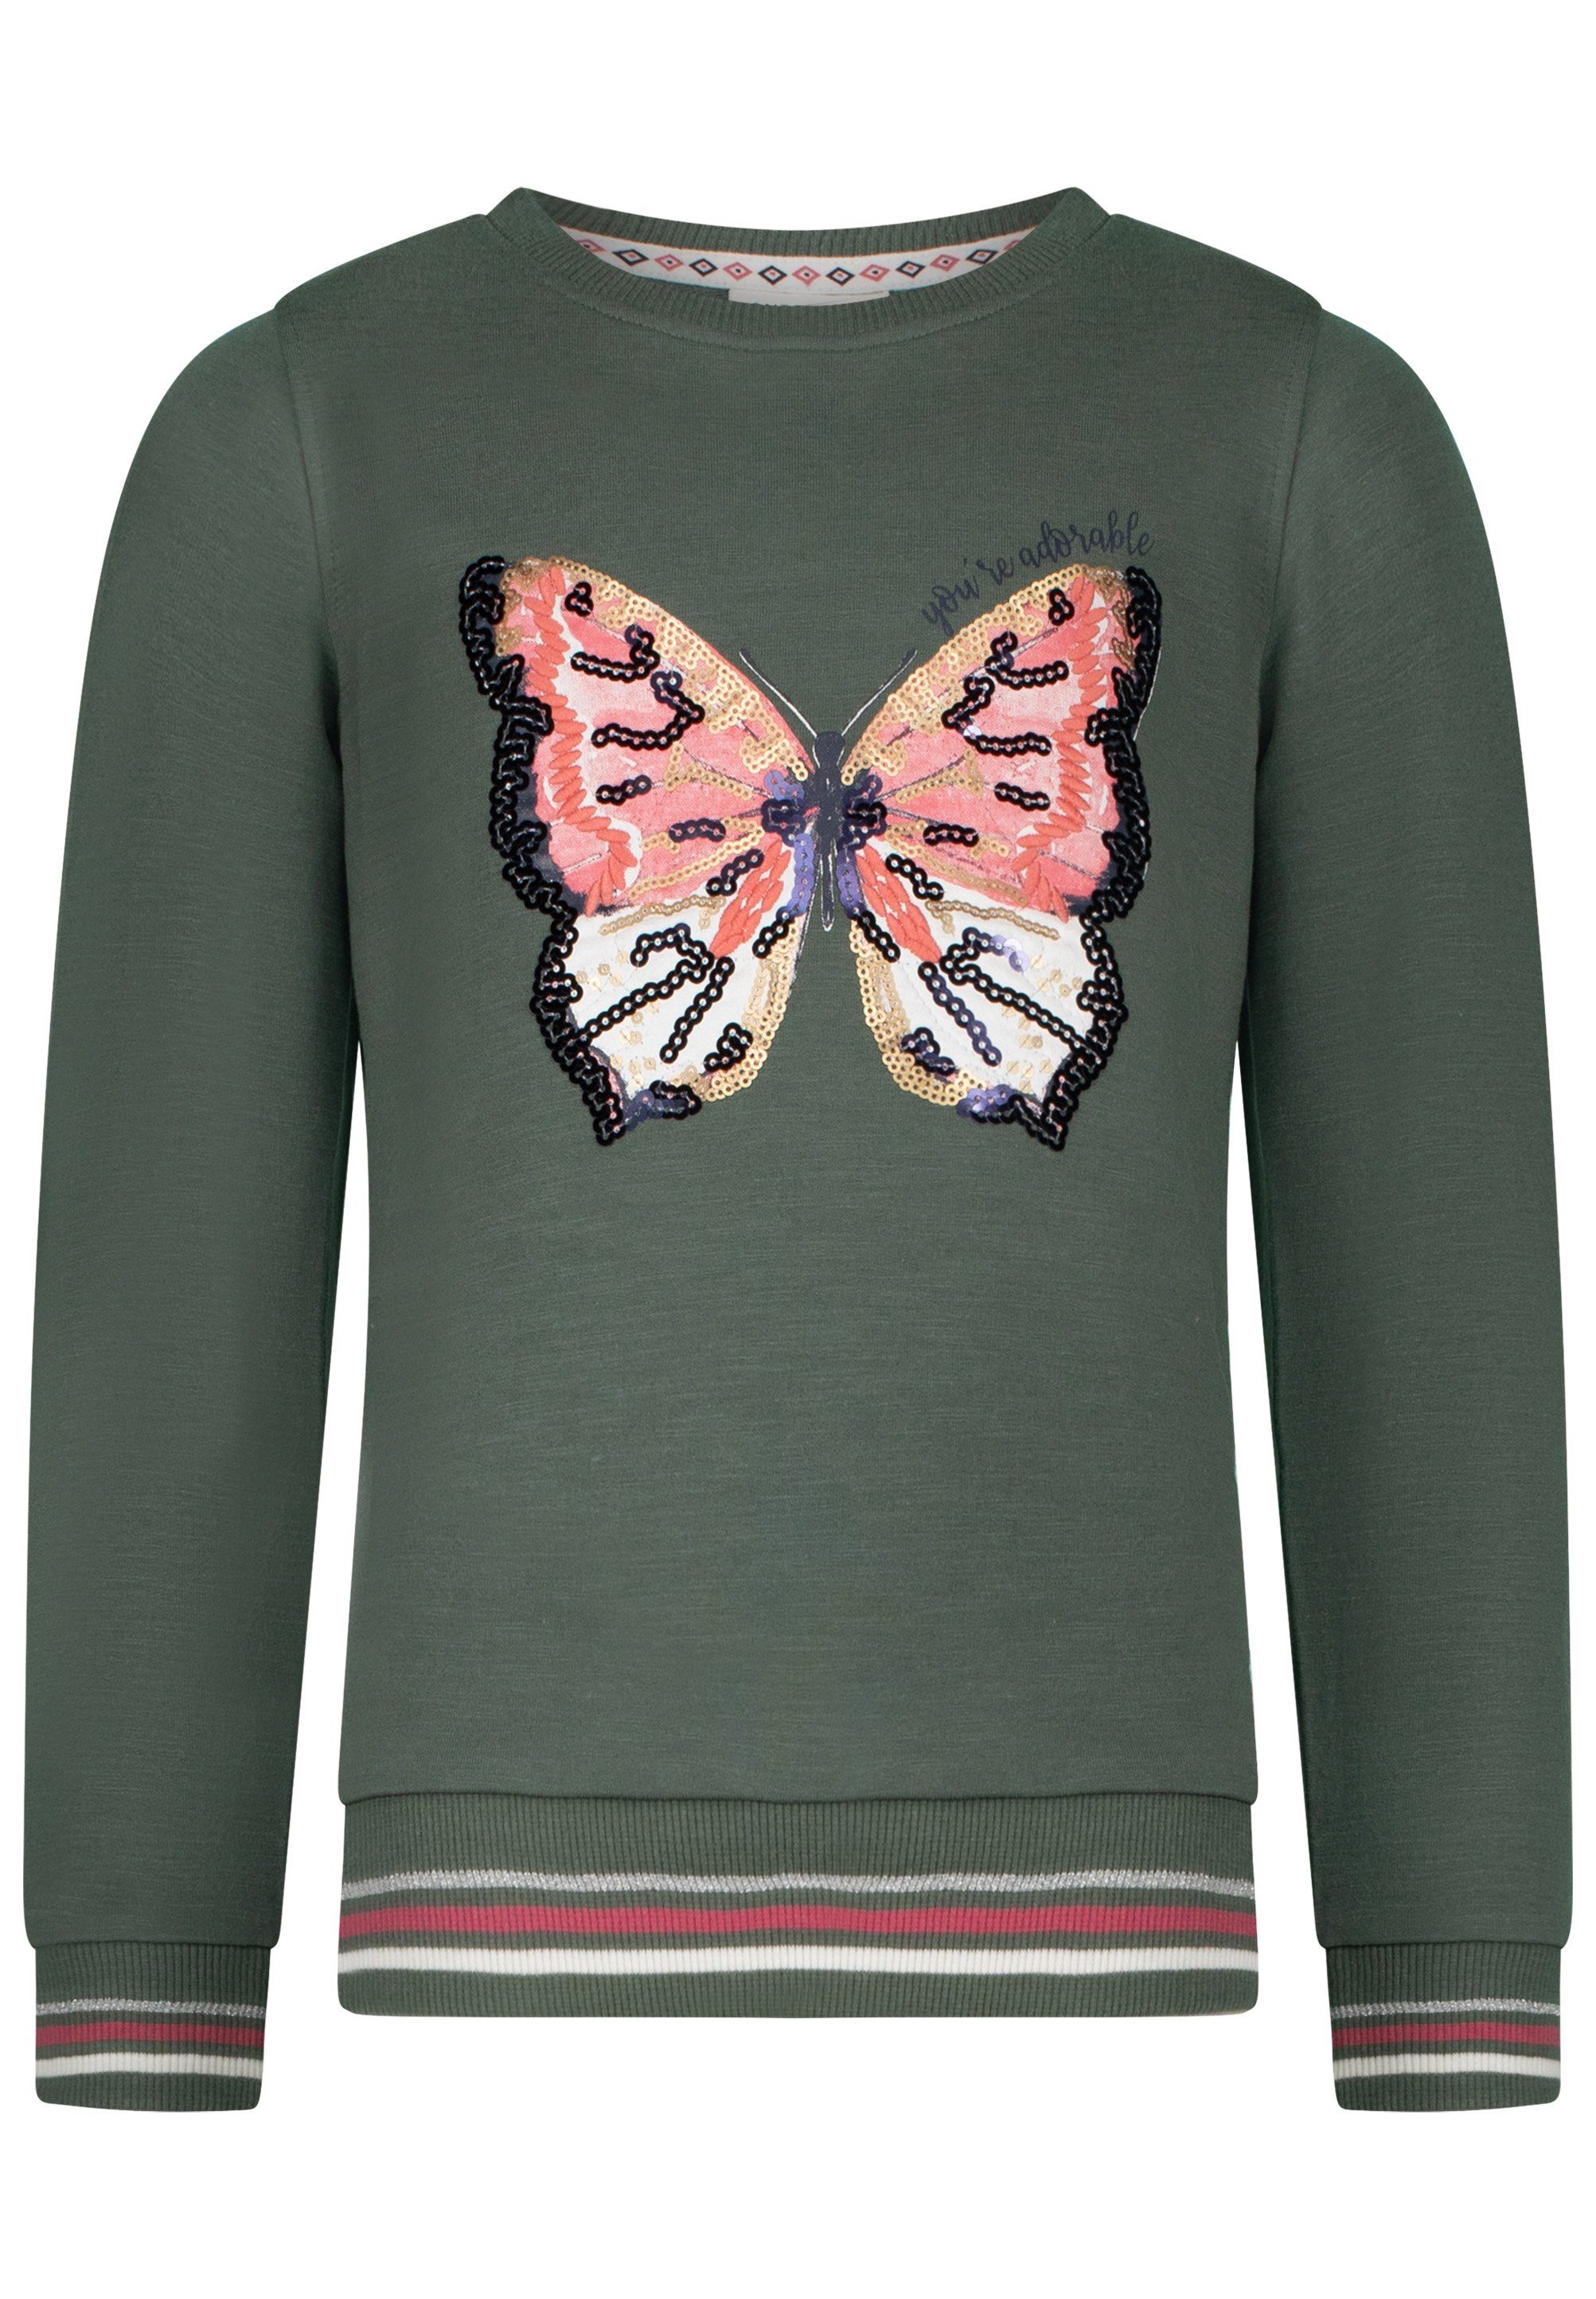 SALT AND PEPPER Sweatshirt Amazing mit großem Paillettenschmetterling,  Detailreicher Schmetterlingsdruck mit Pailletten verziert